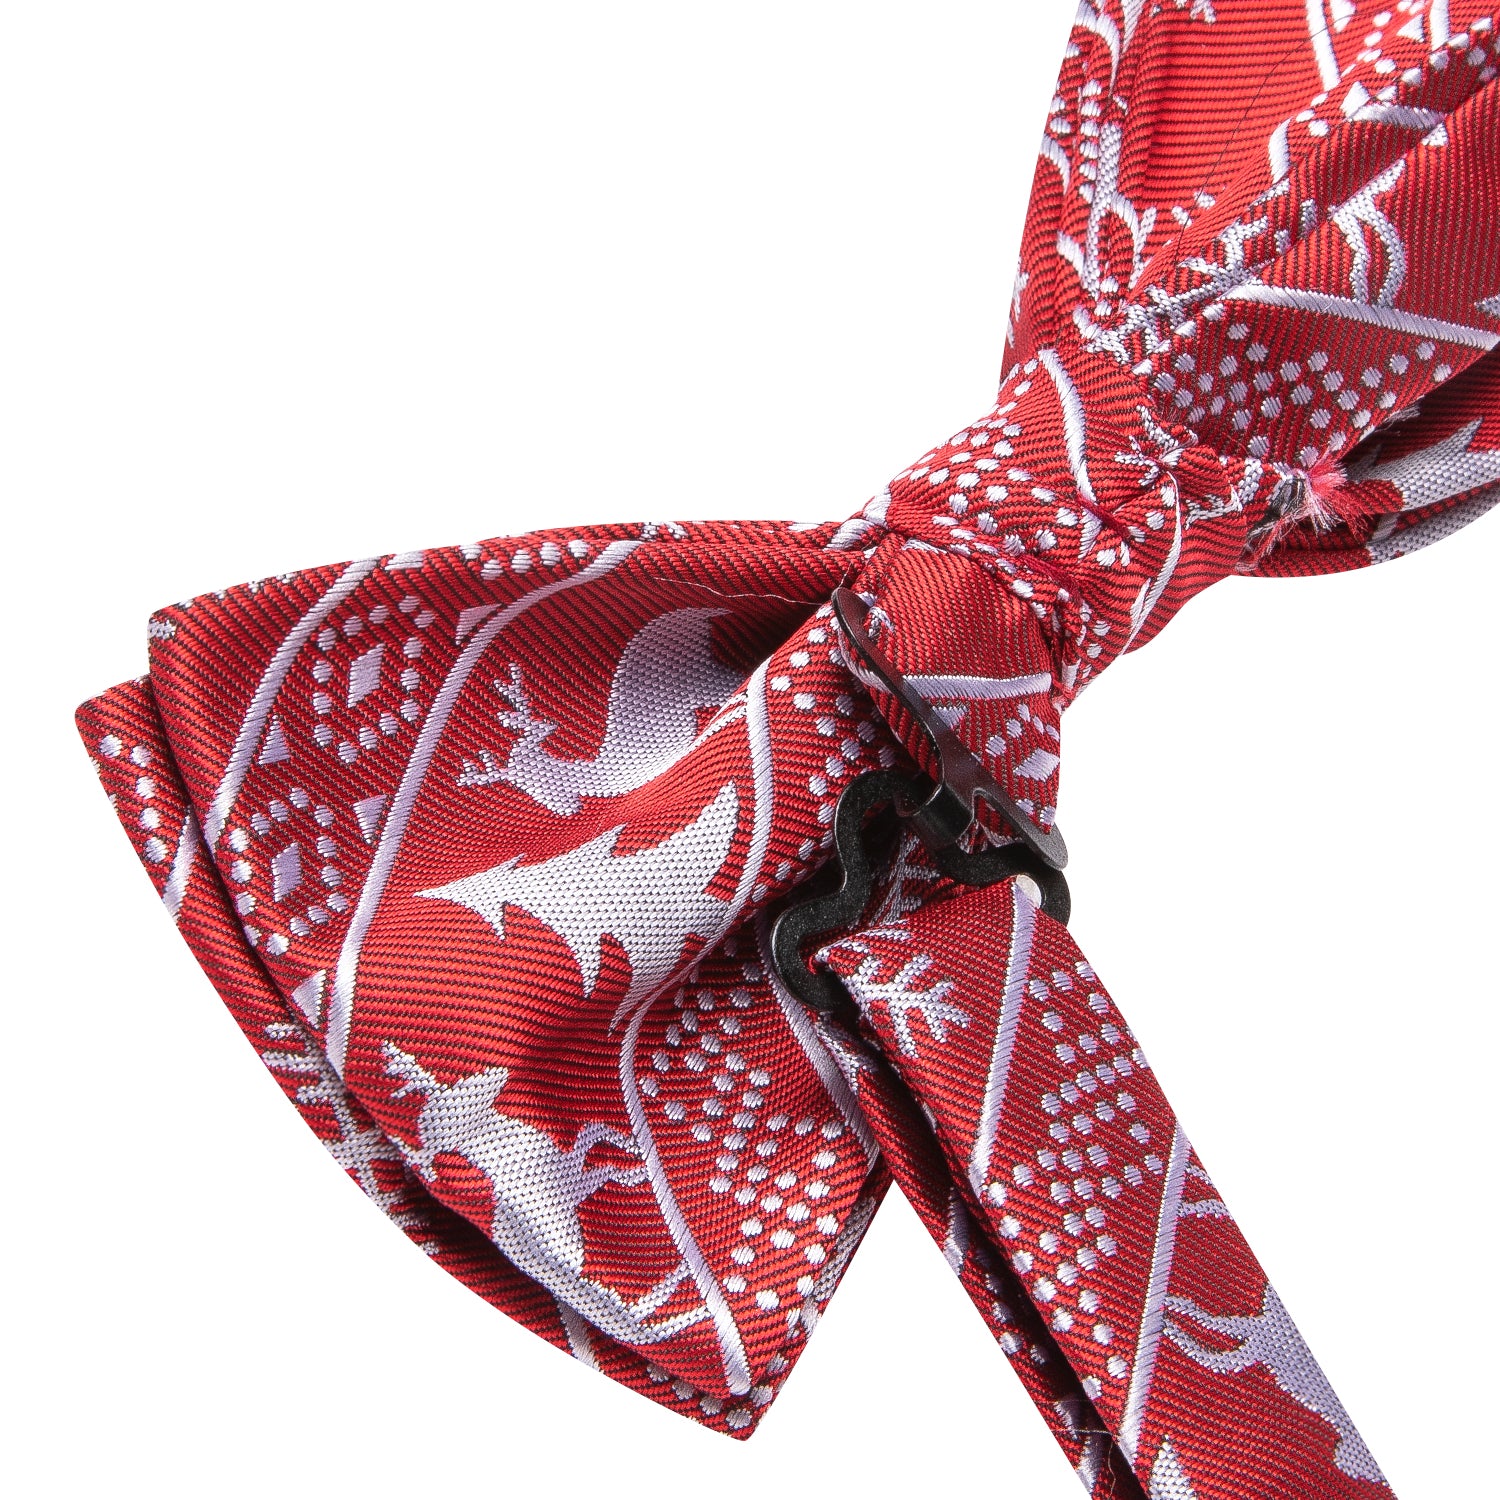 Red Christmas Deer Pre-tied Bow Tie Hanky Cufflinks Set